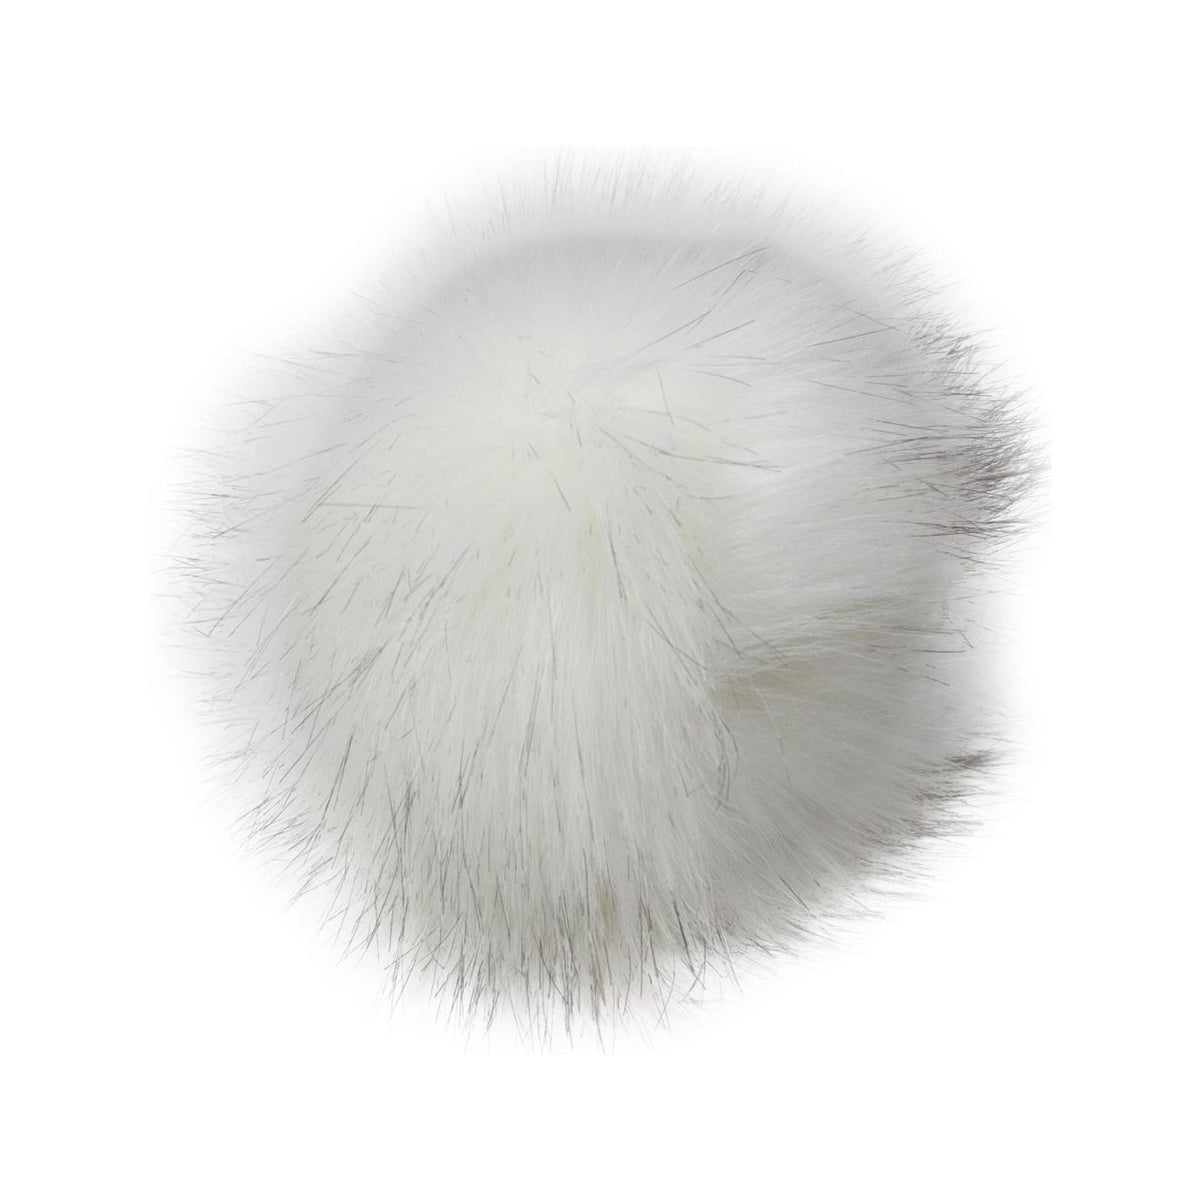 Pre-cut XL 5 Inch Pure White Pom Pom Squares Luxury Faux Fur